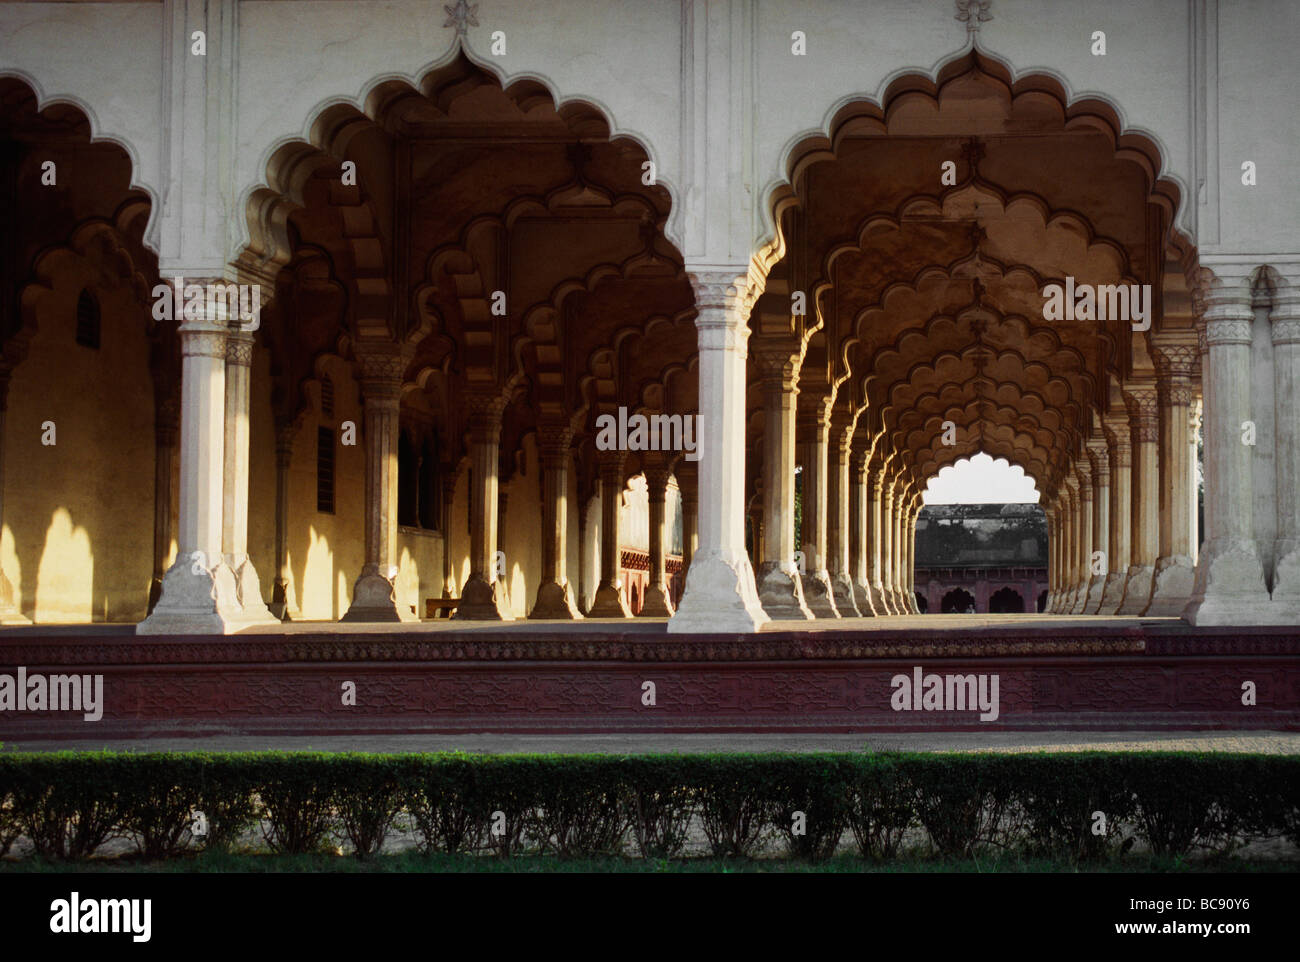 Archi islamica a Agra fort costruito dagli imperatori Mughal nel 1500 s AGRA INDIA Foto Stock